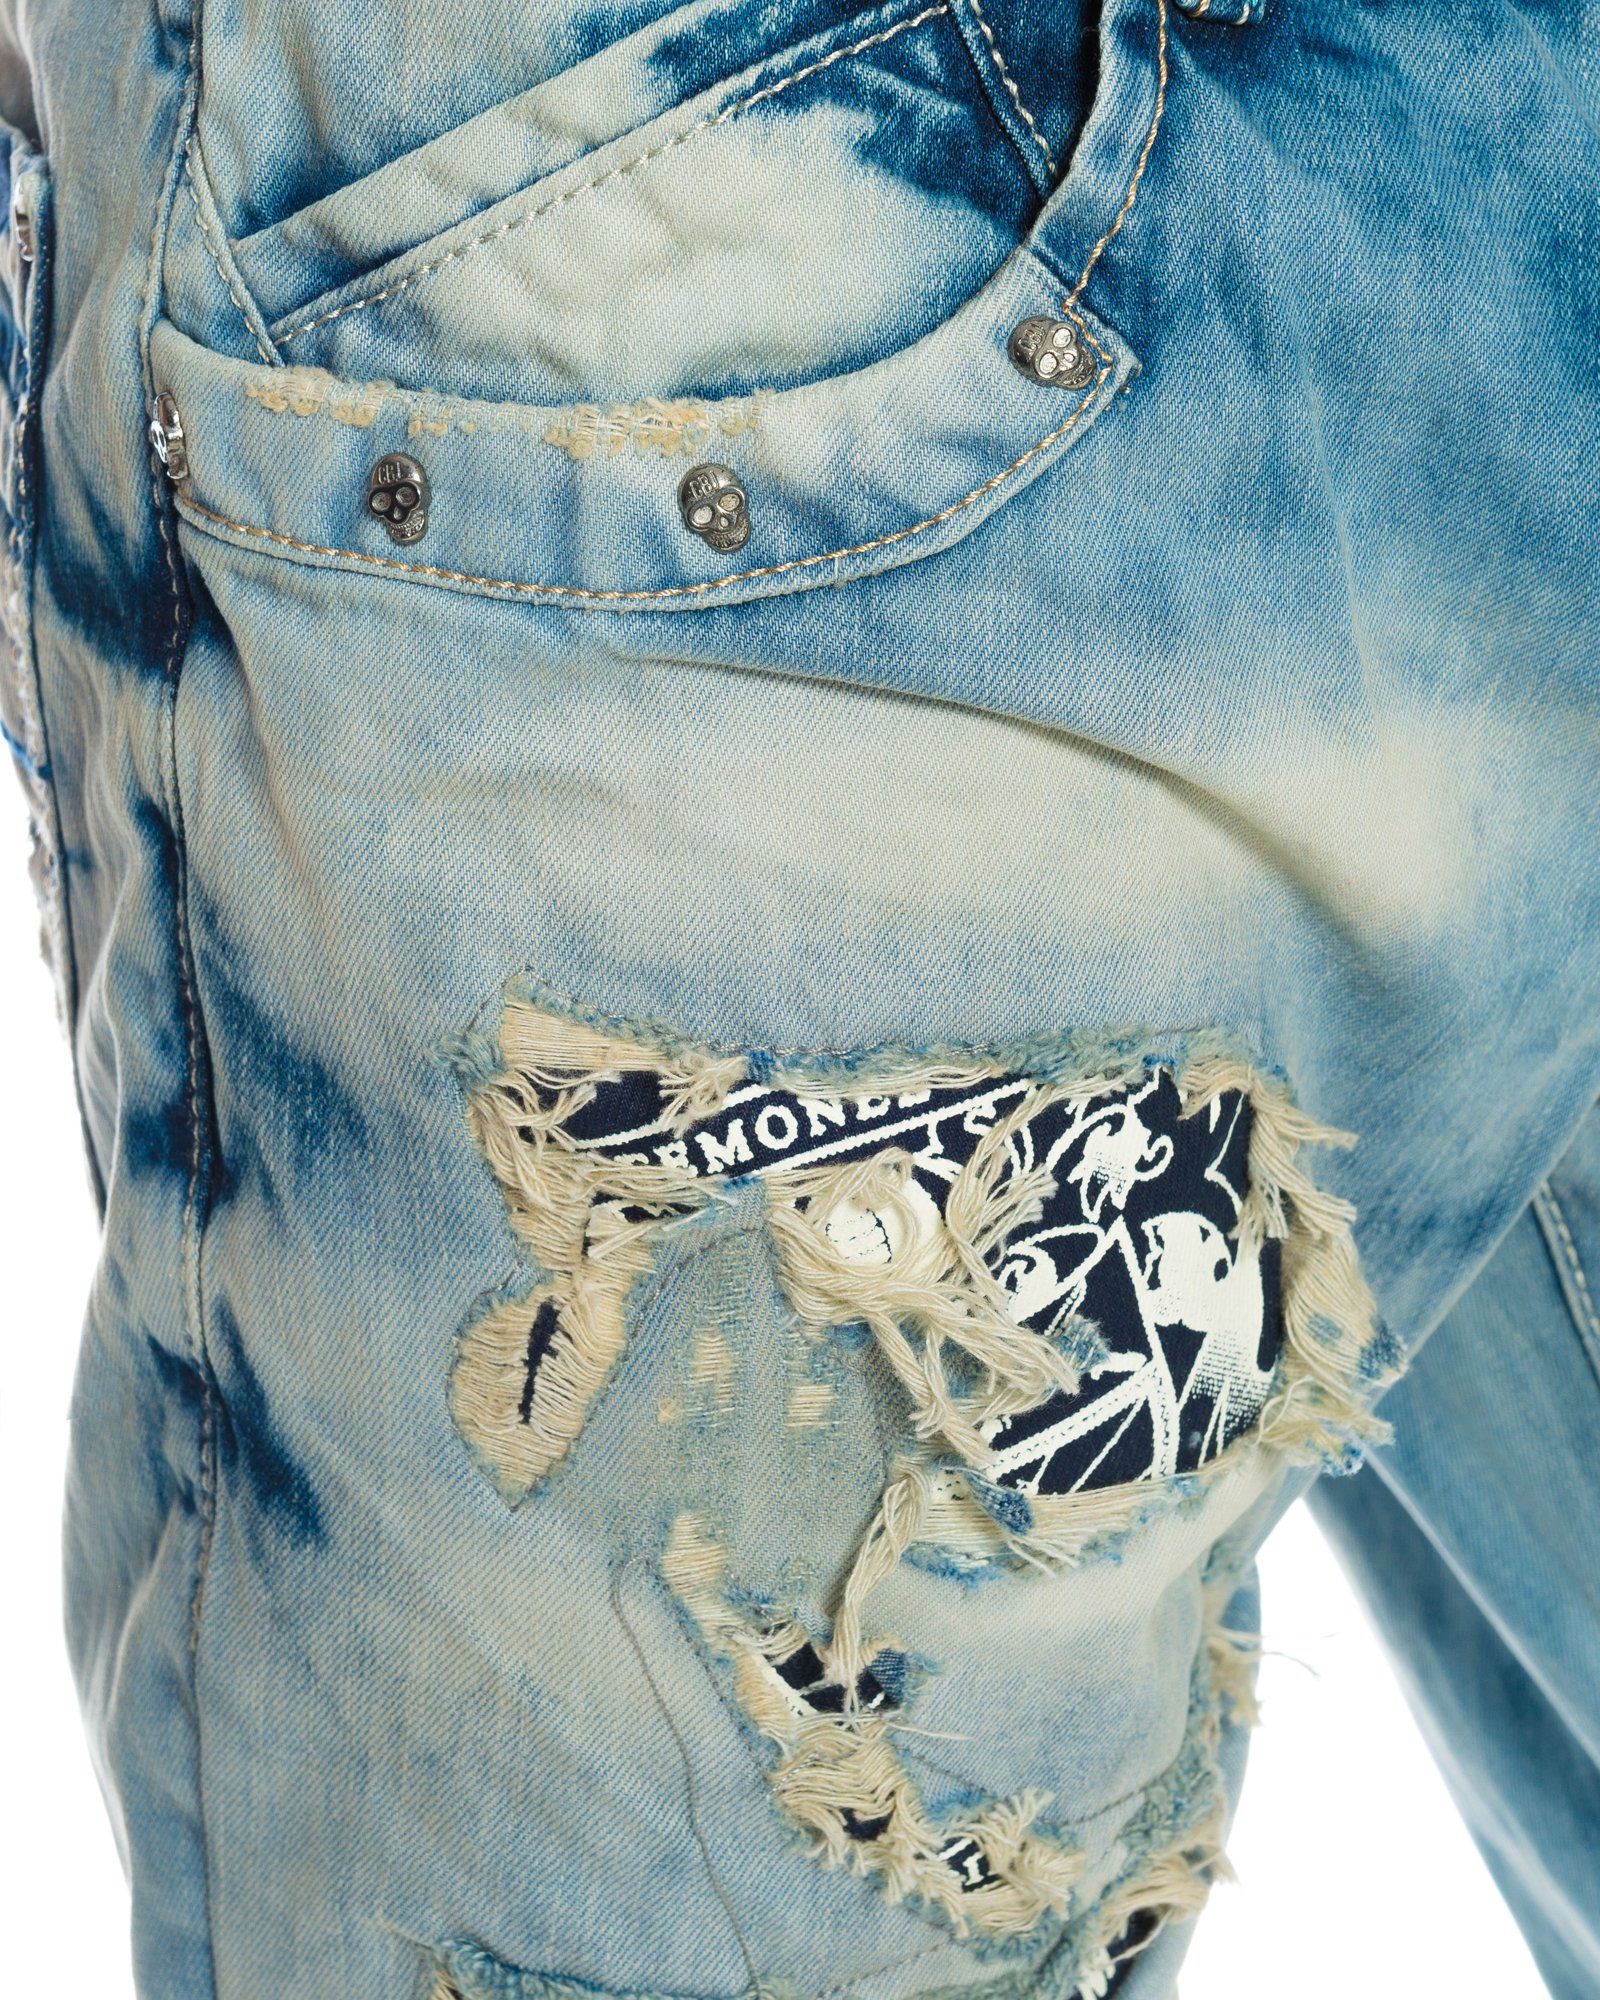 Regular-fit-Jeans Herren Hose mit camouflage Baxx destroyed Waschung Cipo & Elementen Jeans Stylische